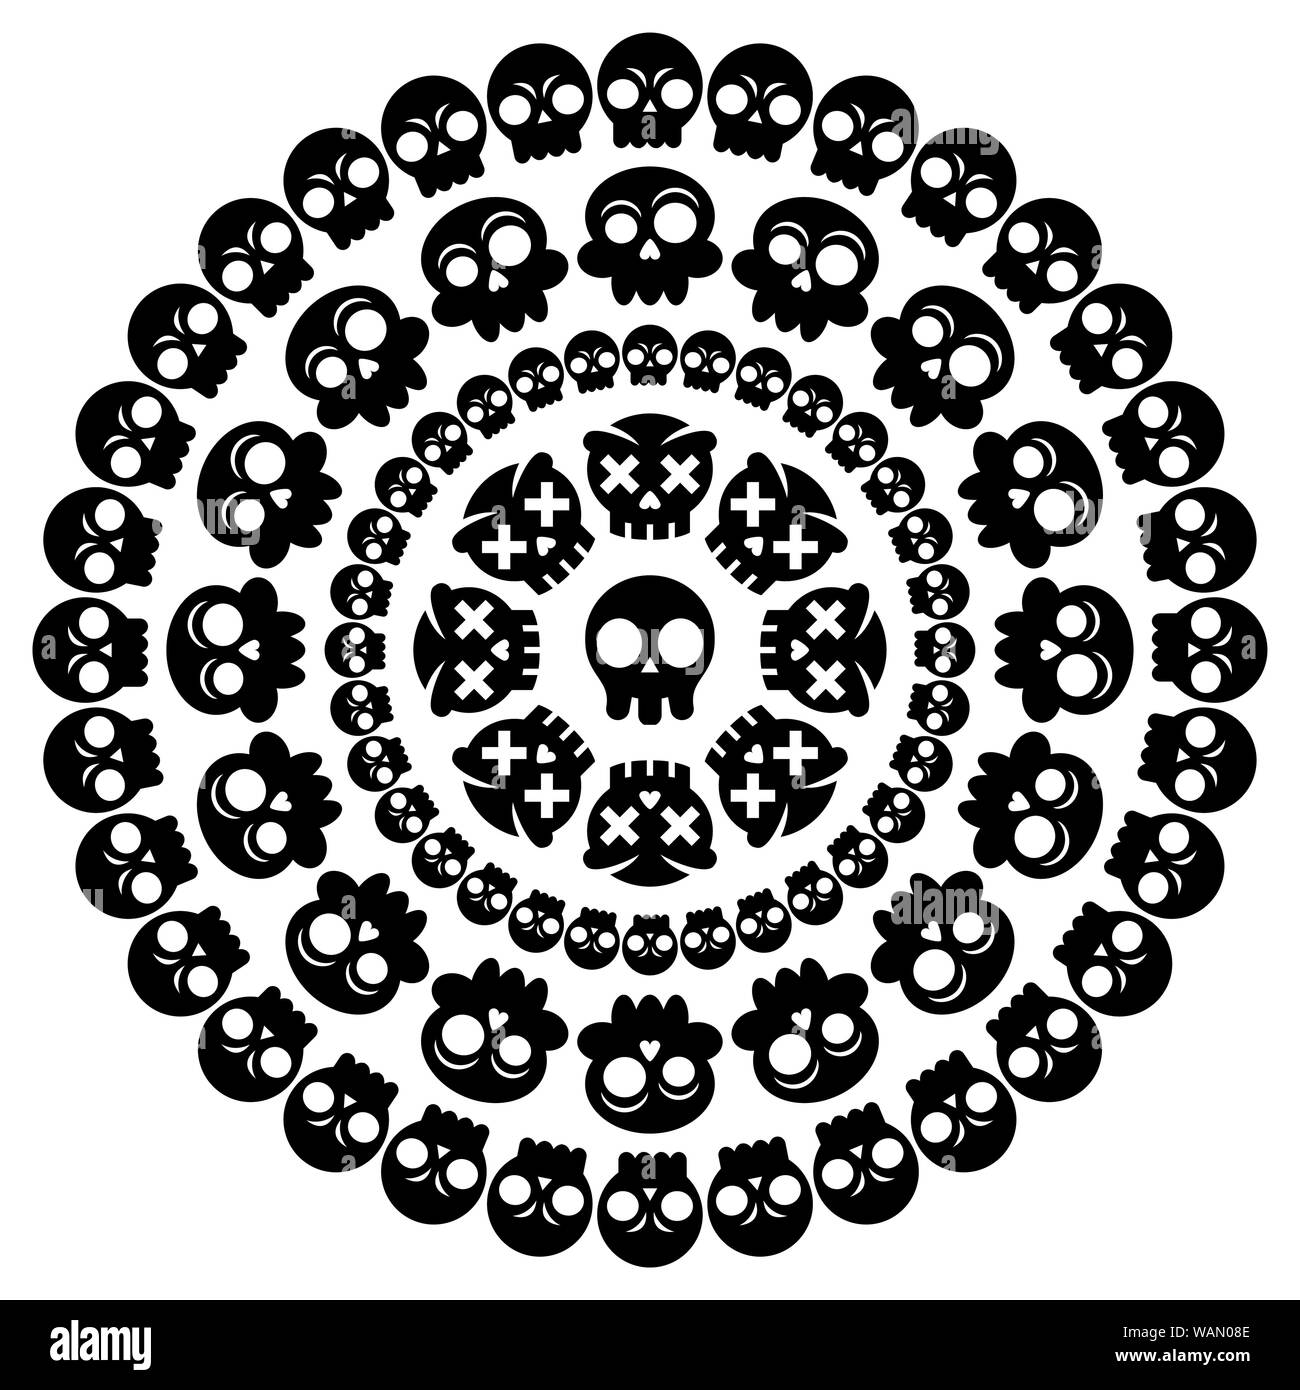 Mandala du crâne, vecteur conception décoration d'Halloween avec des crânes mexicains en noir sur fond blanc Illustration de Vecteur